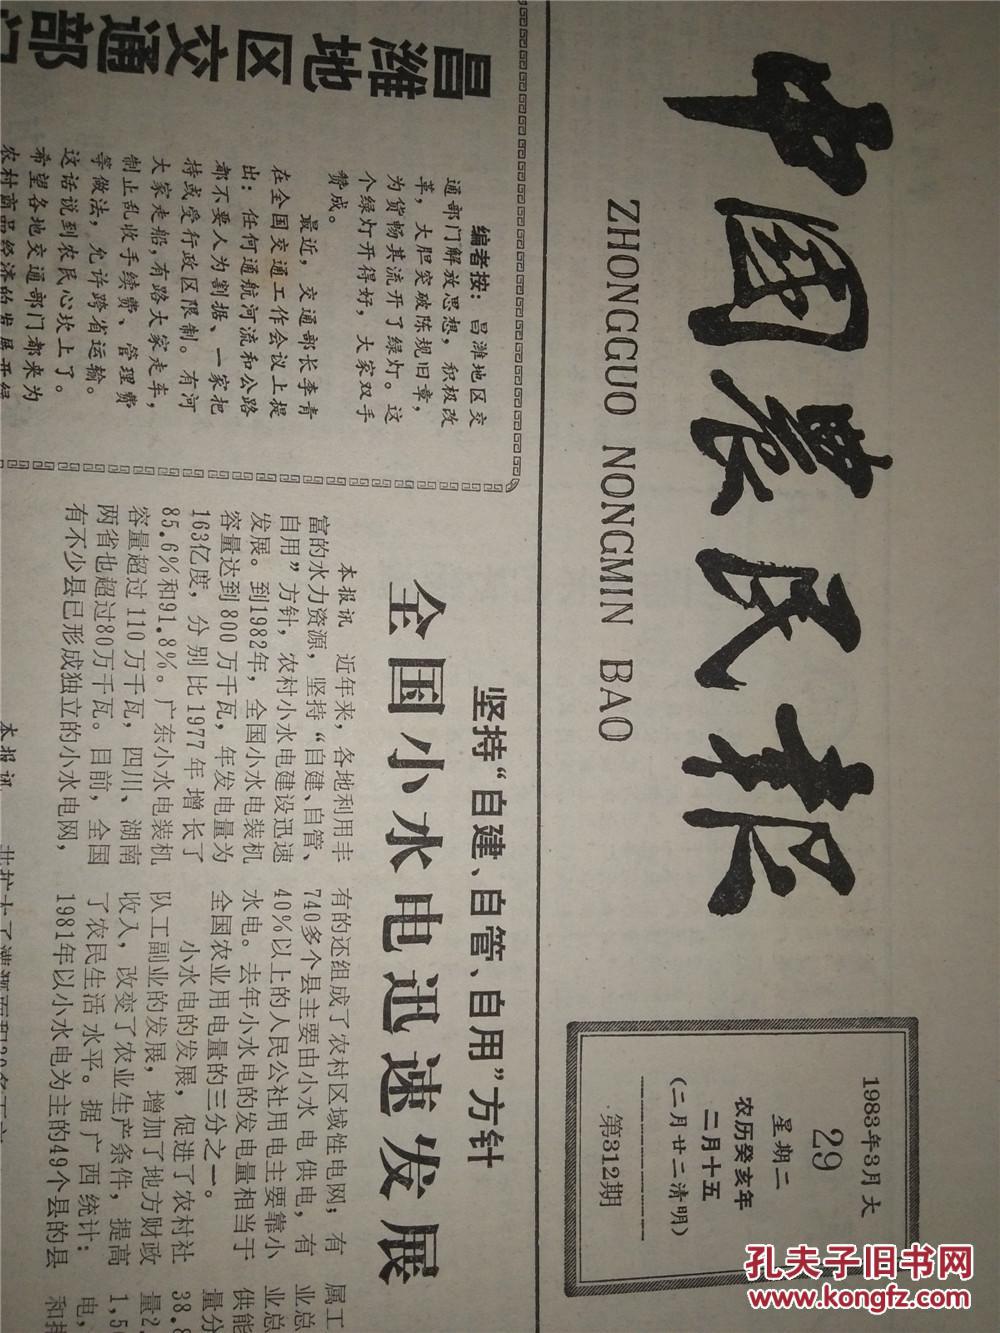 生日报 中国农民报 1983-3-29 4开4版全